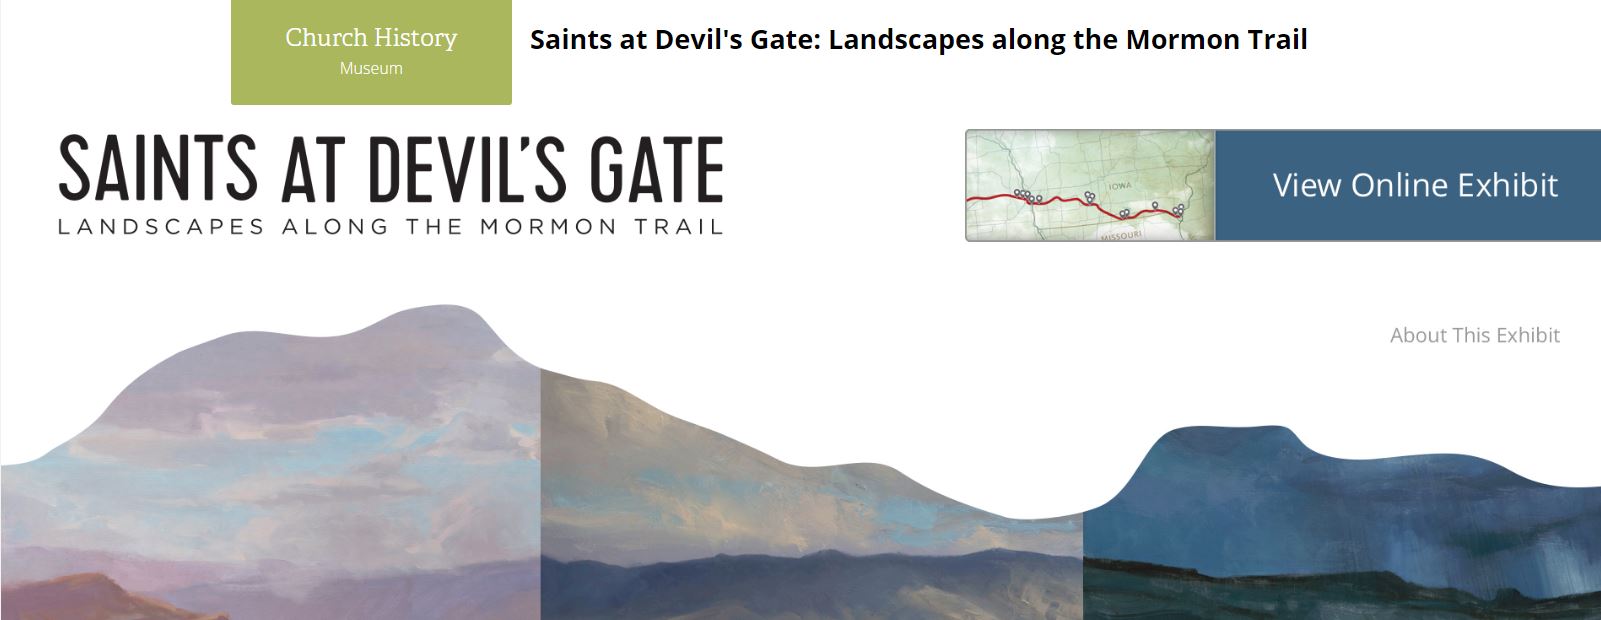 saints-devils-gate-online